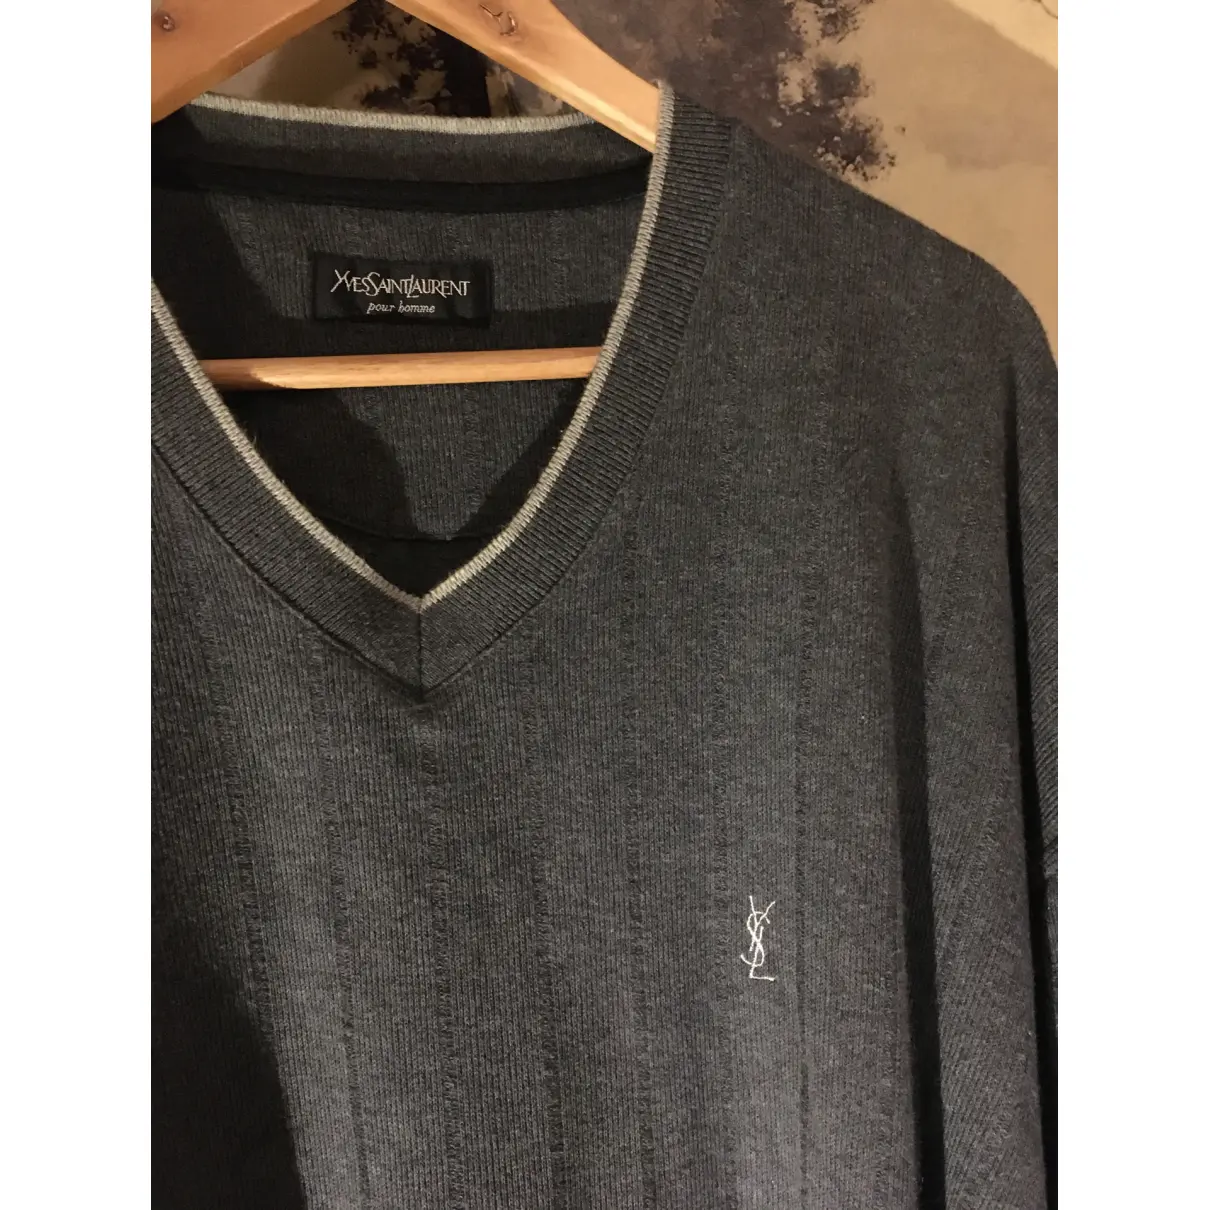 Buy Yves Saint Laurent Sweatshirt online - Vintage